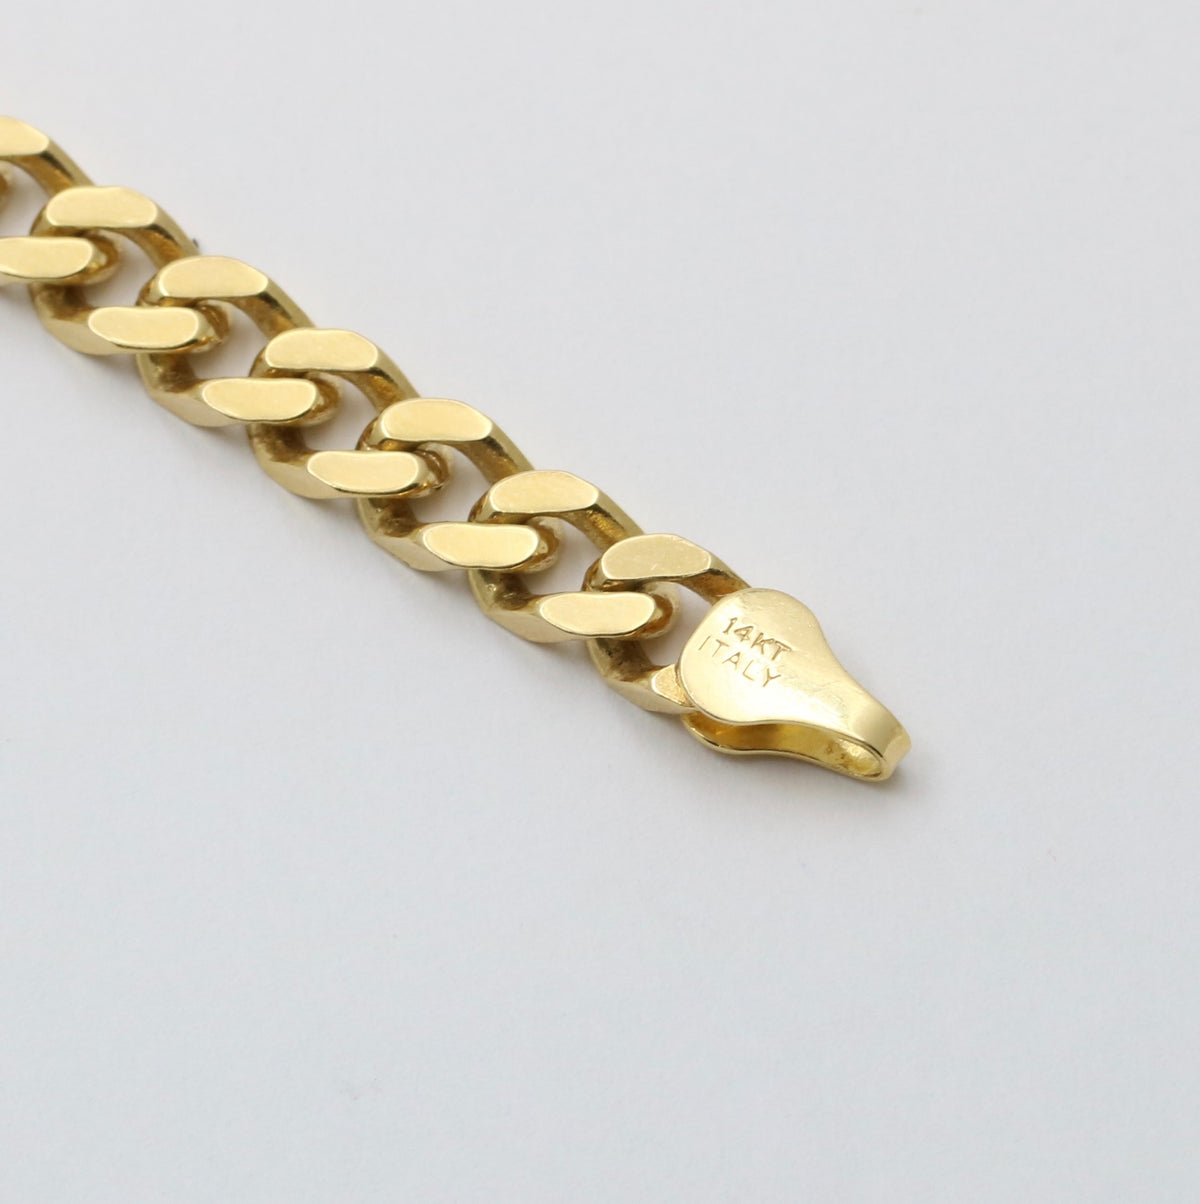 14K Gold Flat Curb Link Bracelet, 7” Long